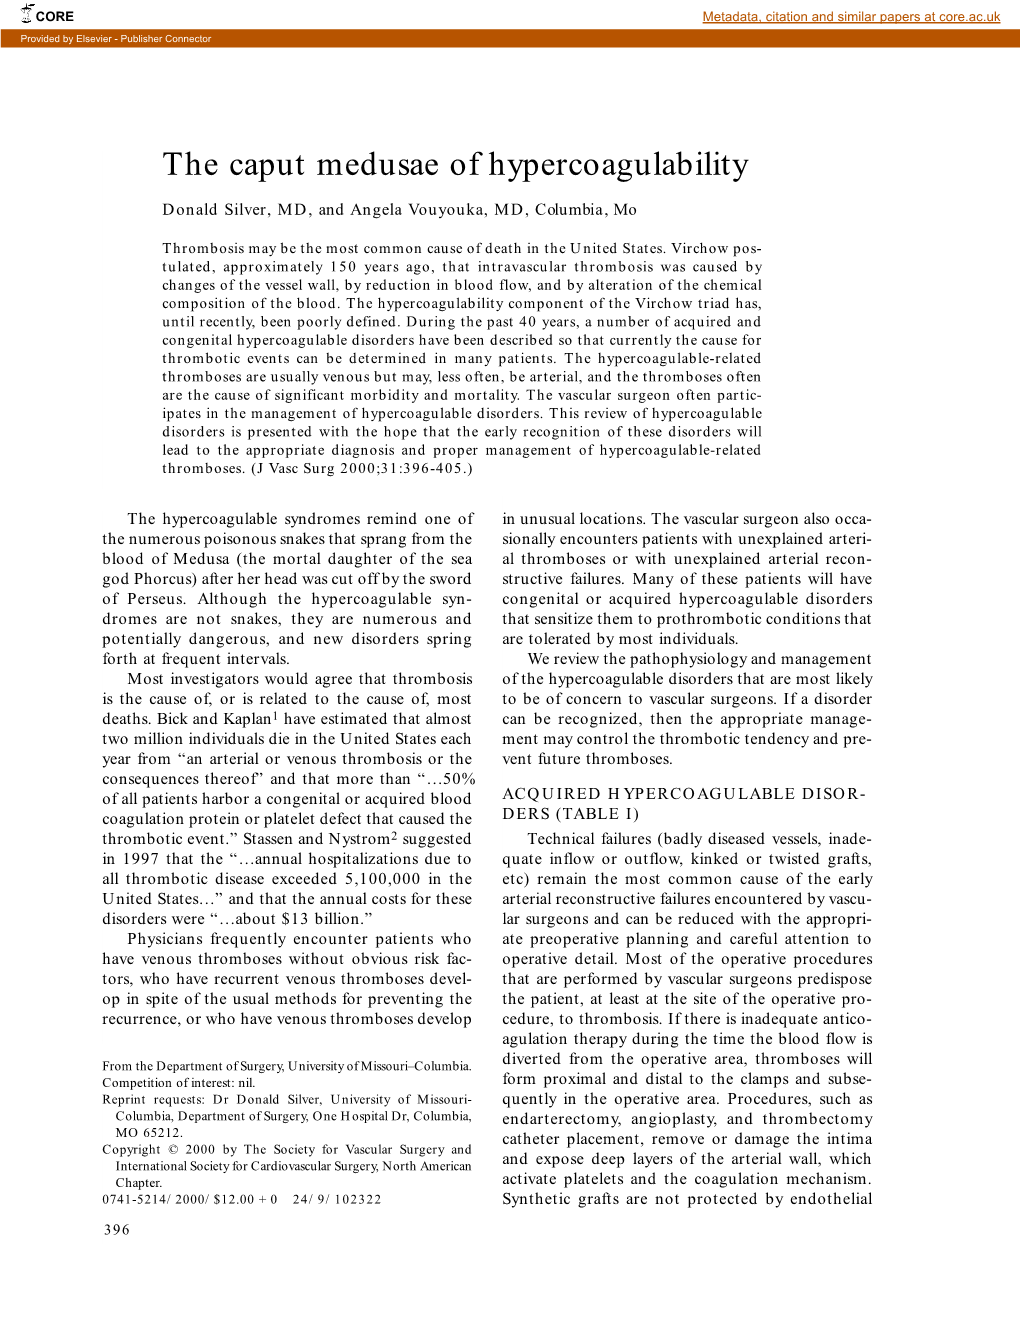 The Caput Medusae of Hypercoagulability